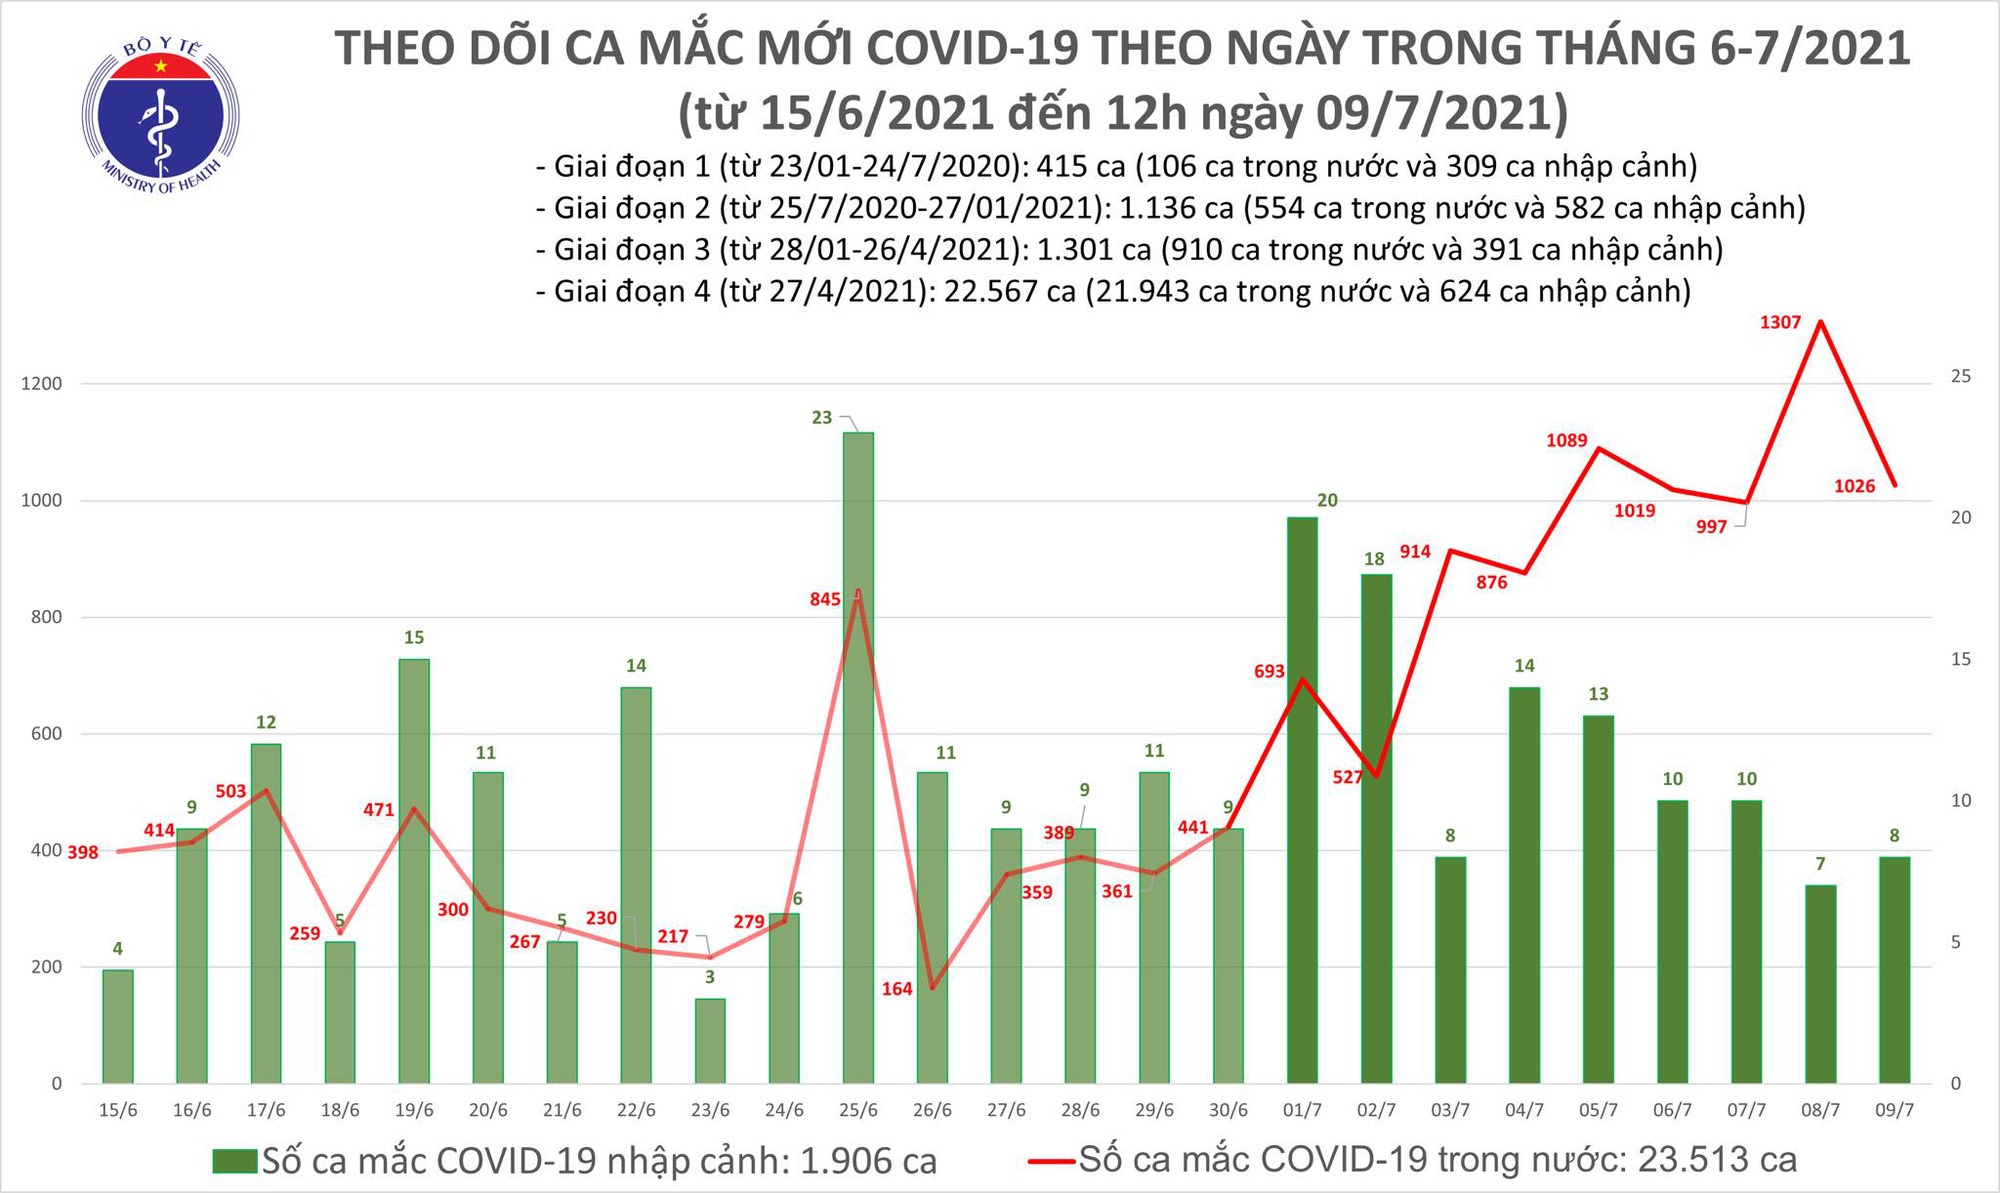 6 tiếng đã có hơn 600 ca Covid-19 mới, TP.HCM gần chạm mốc 10.000 ca - Ảnh 1.